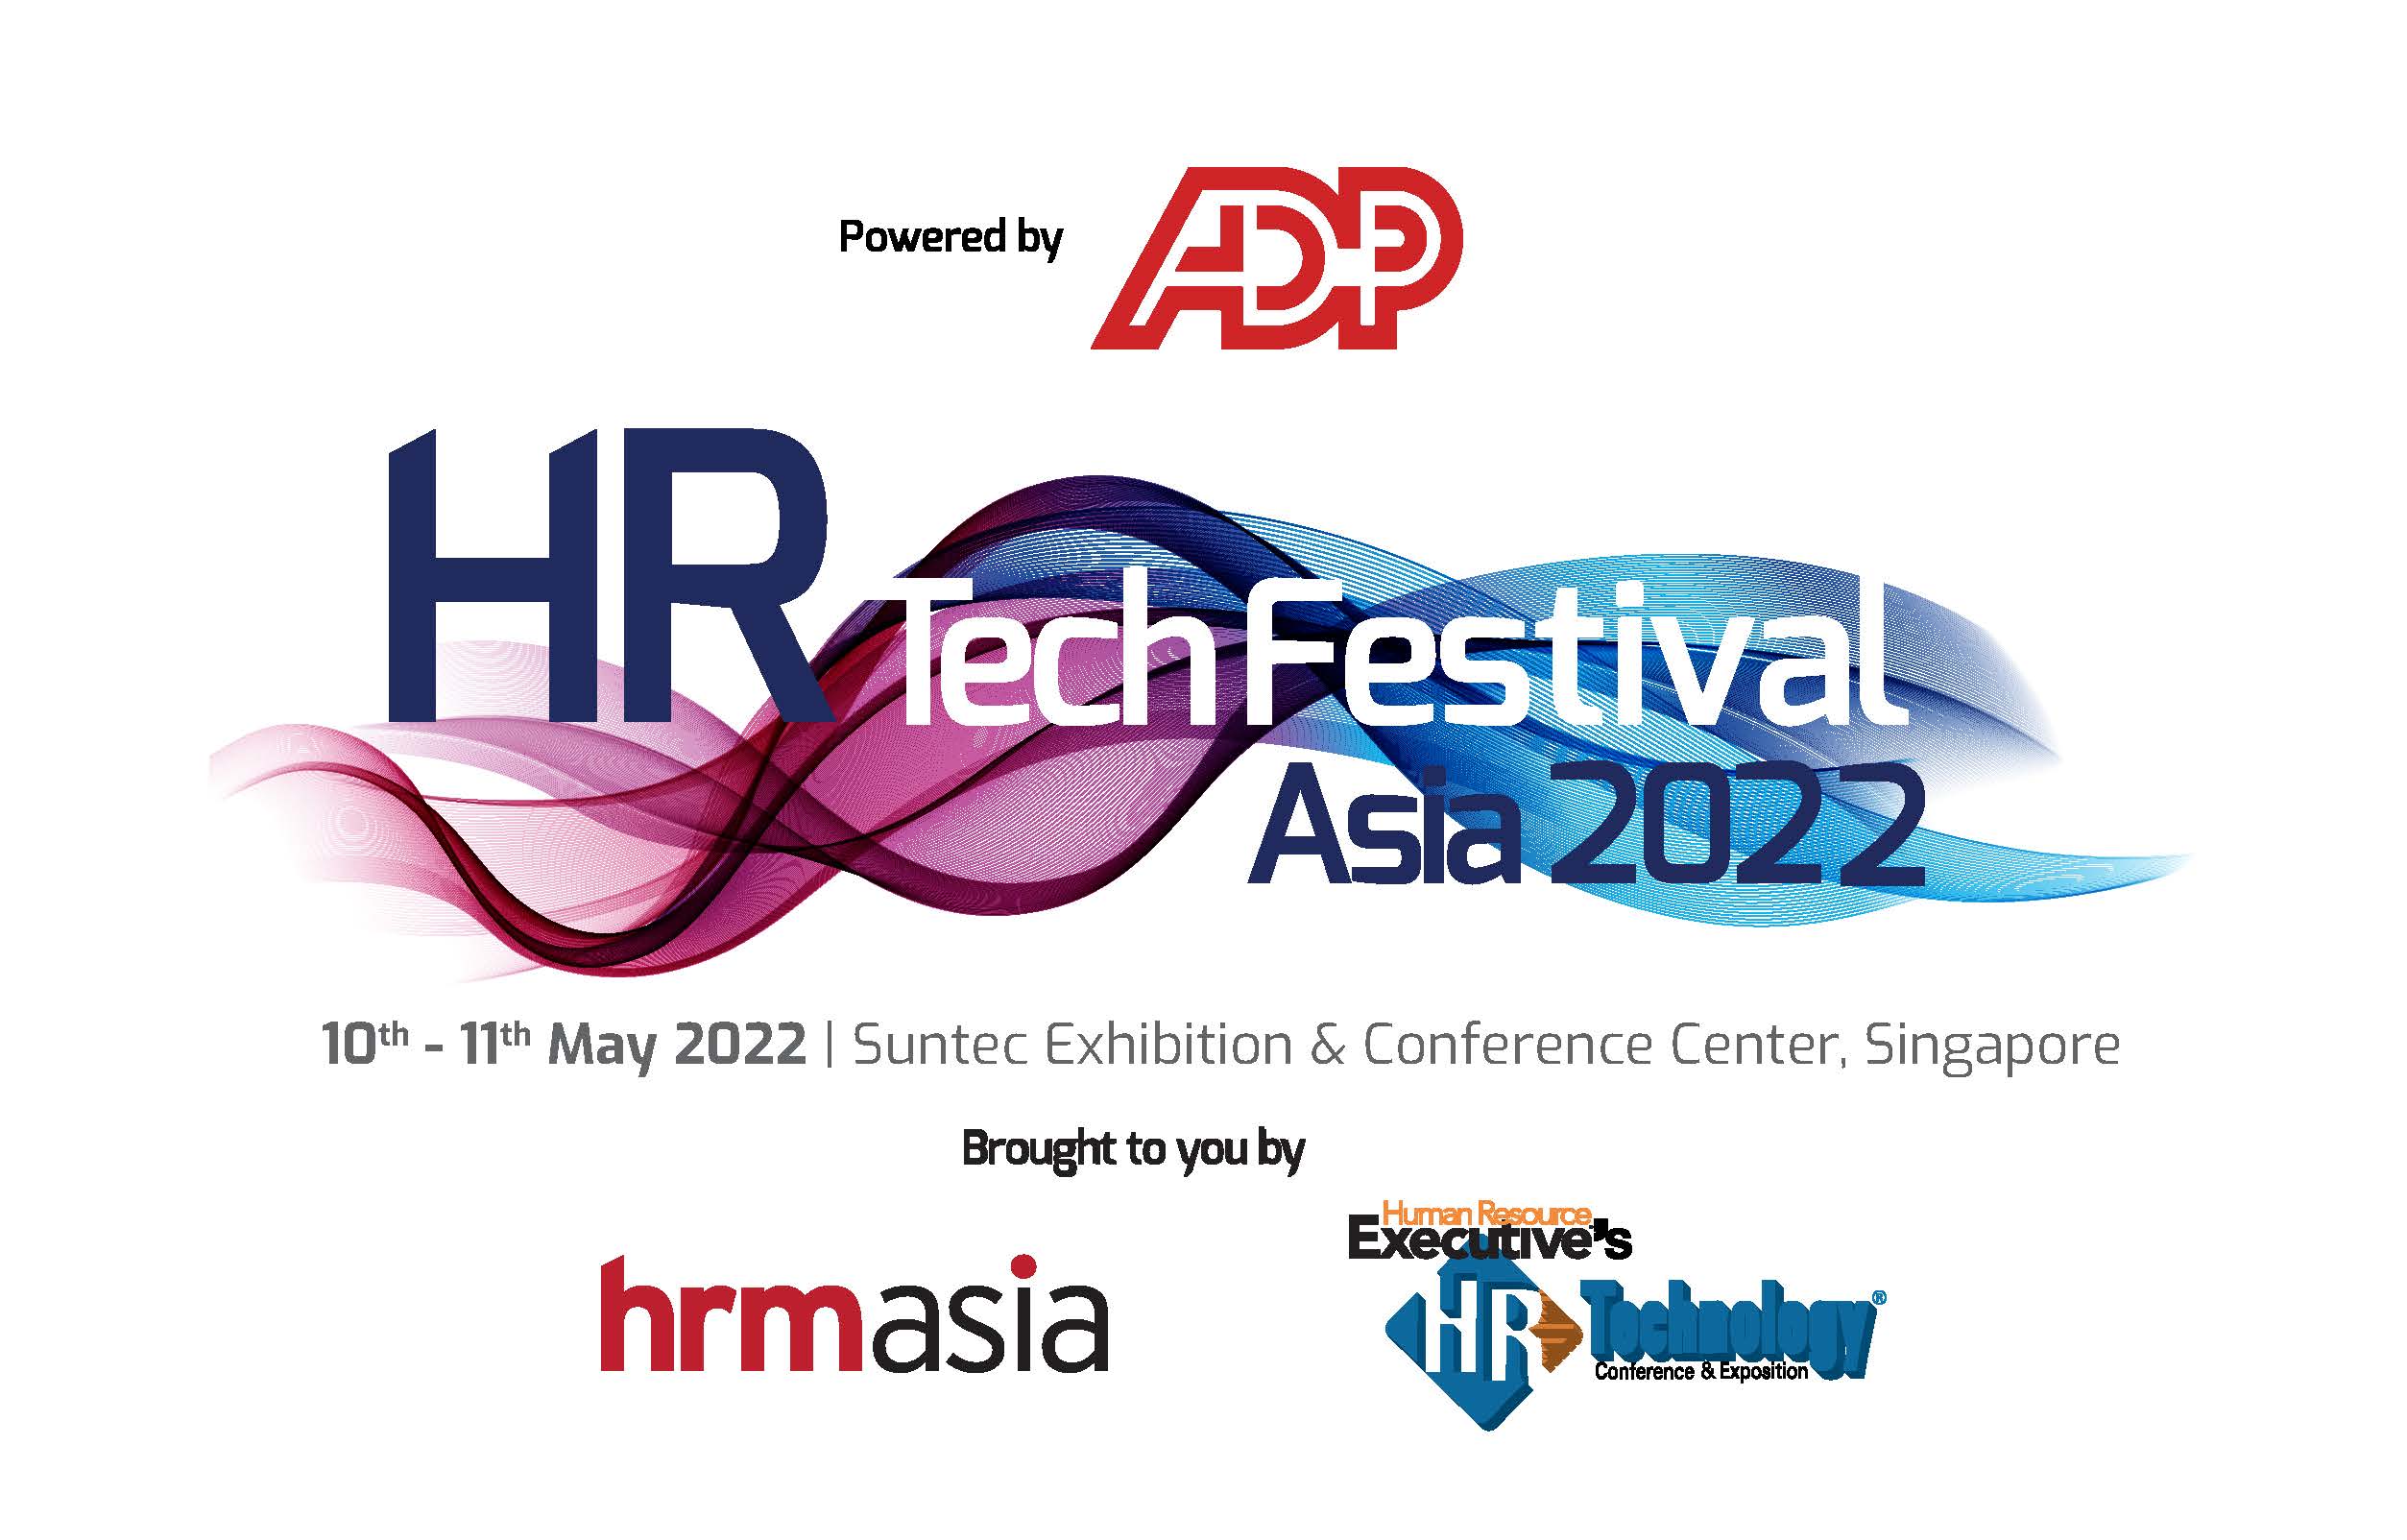 hr-techfest-connect-2021-logo-w-hrm-hrtech-va2-logo-full-color-rgb adp copy